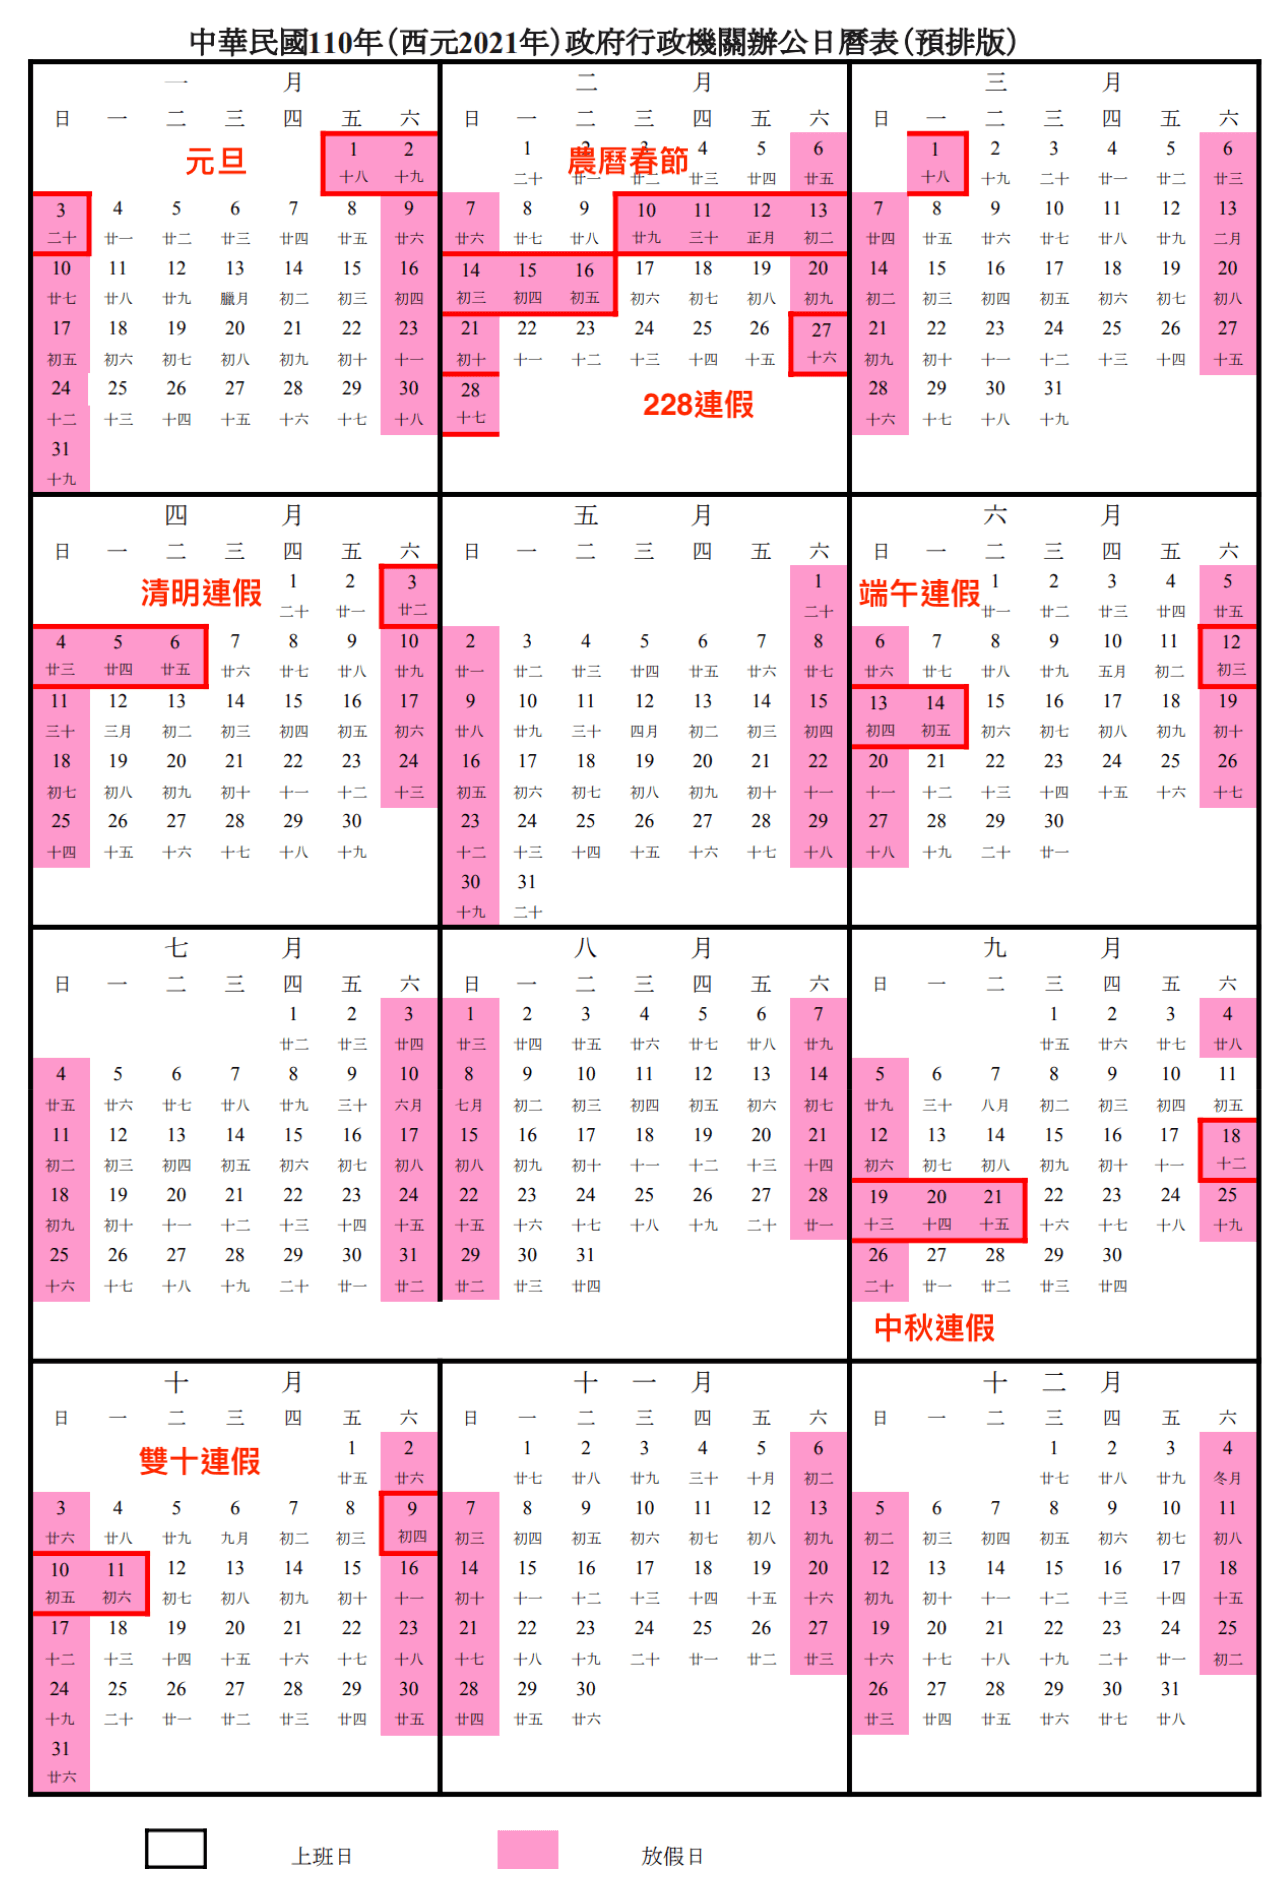 【2021行事曆】, 人事行政局, 110年行事曆